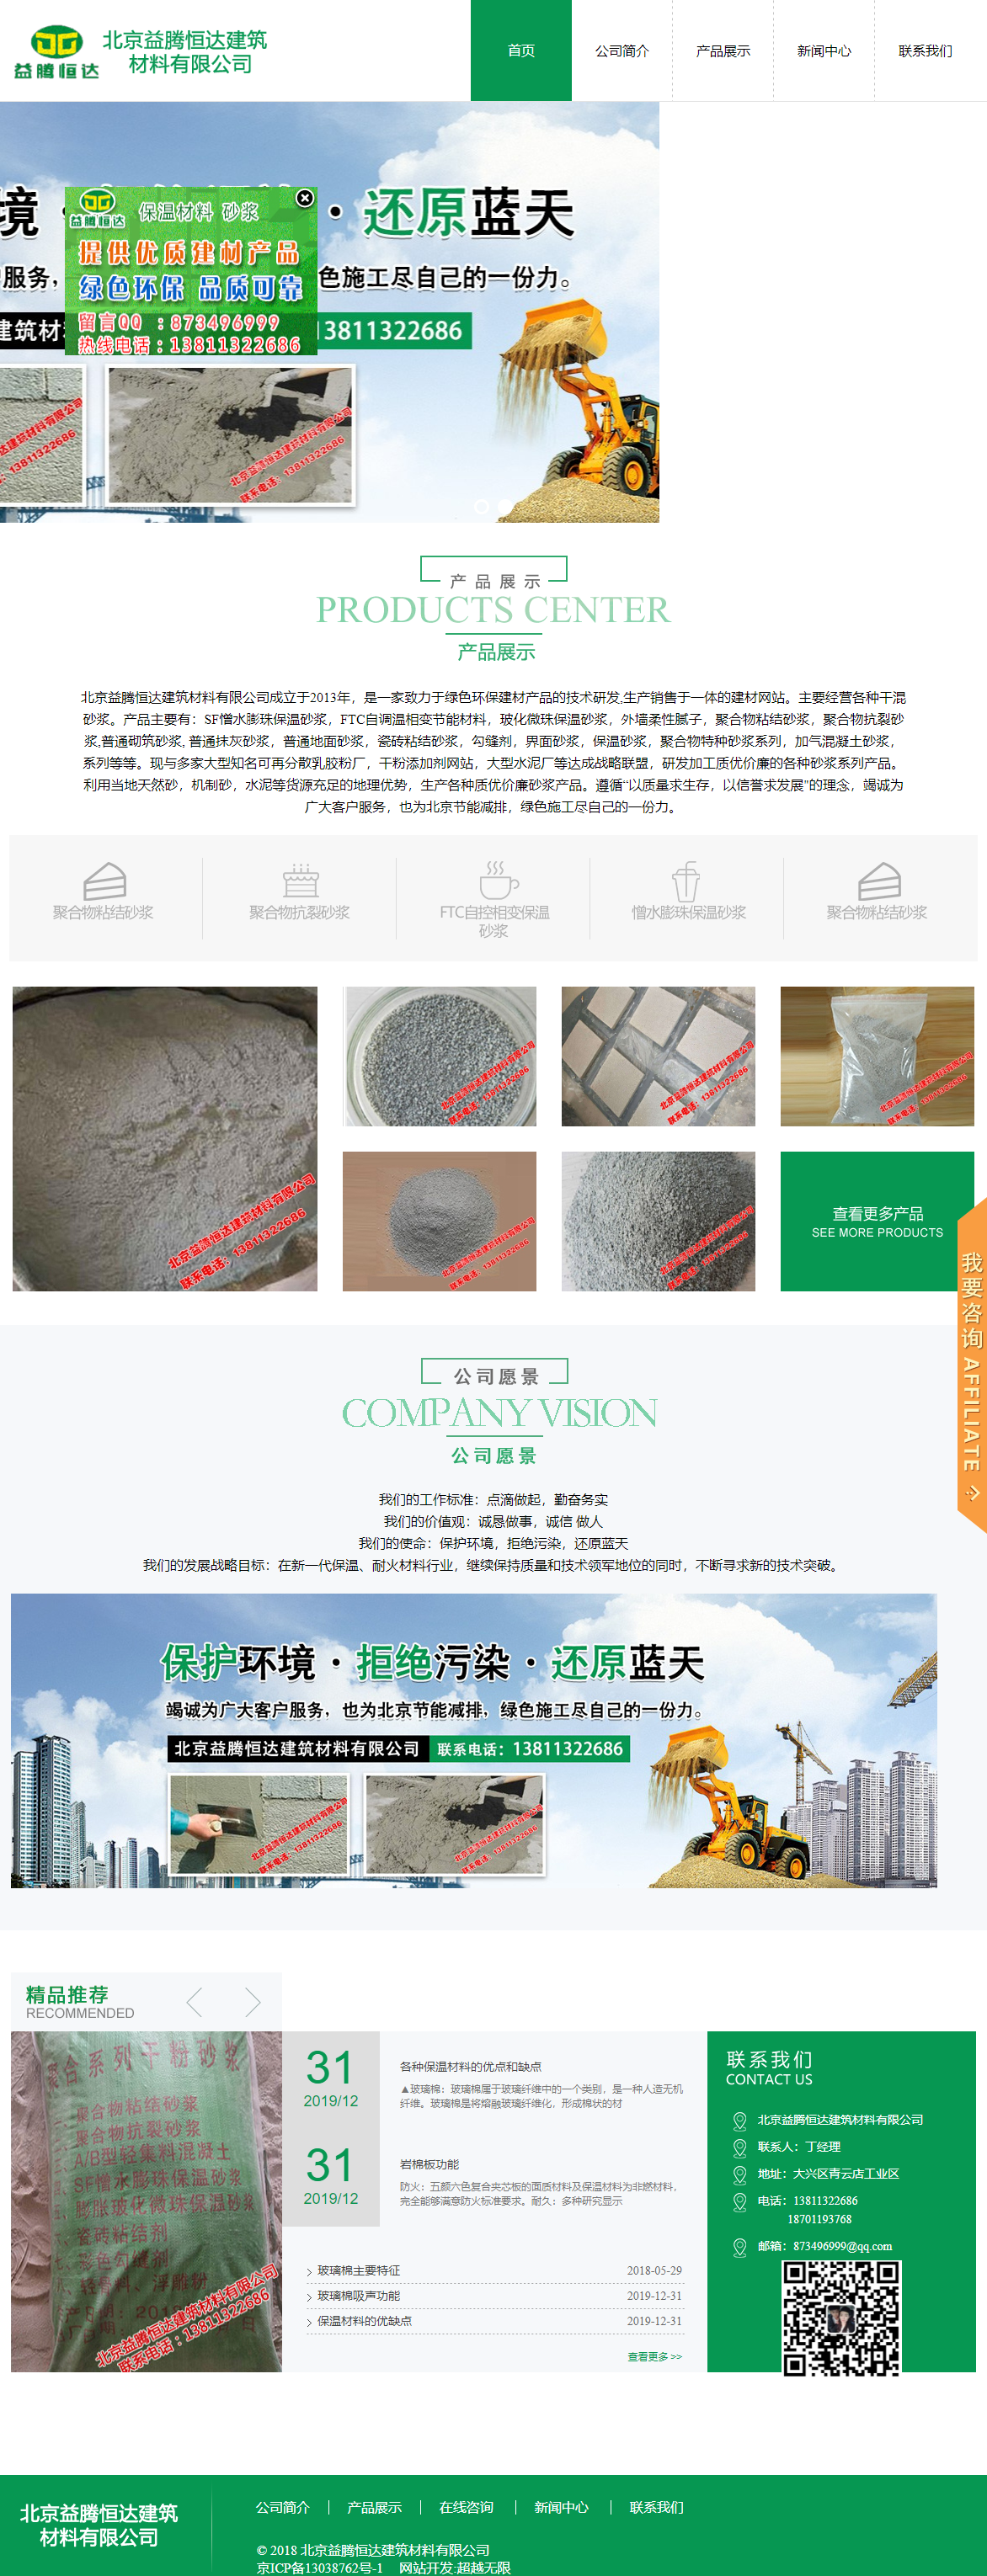 北京益腾恒达建筑材料有限公司网站案例